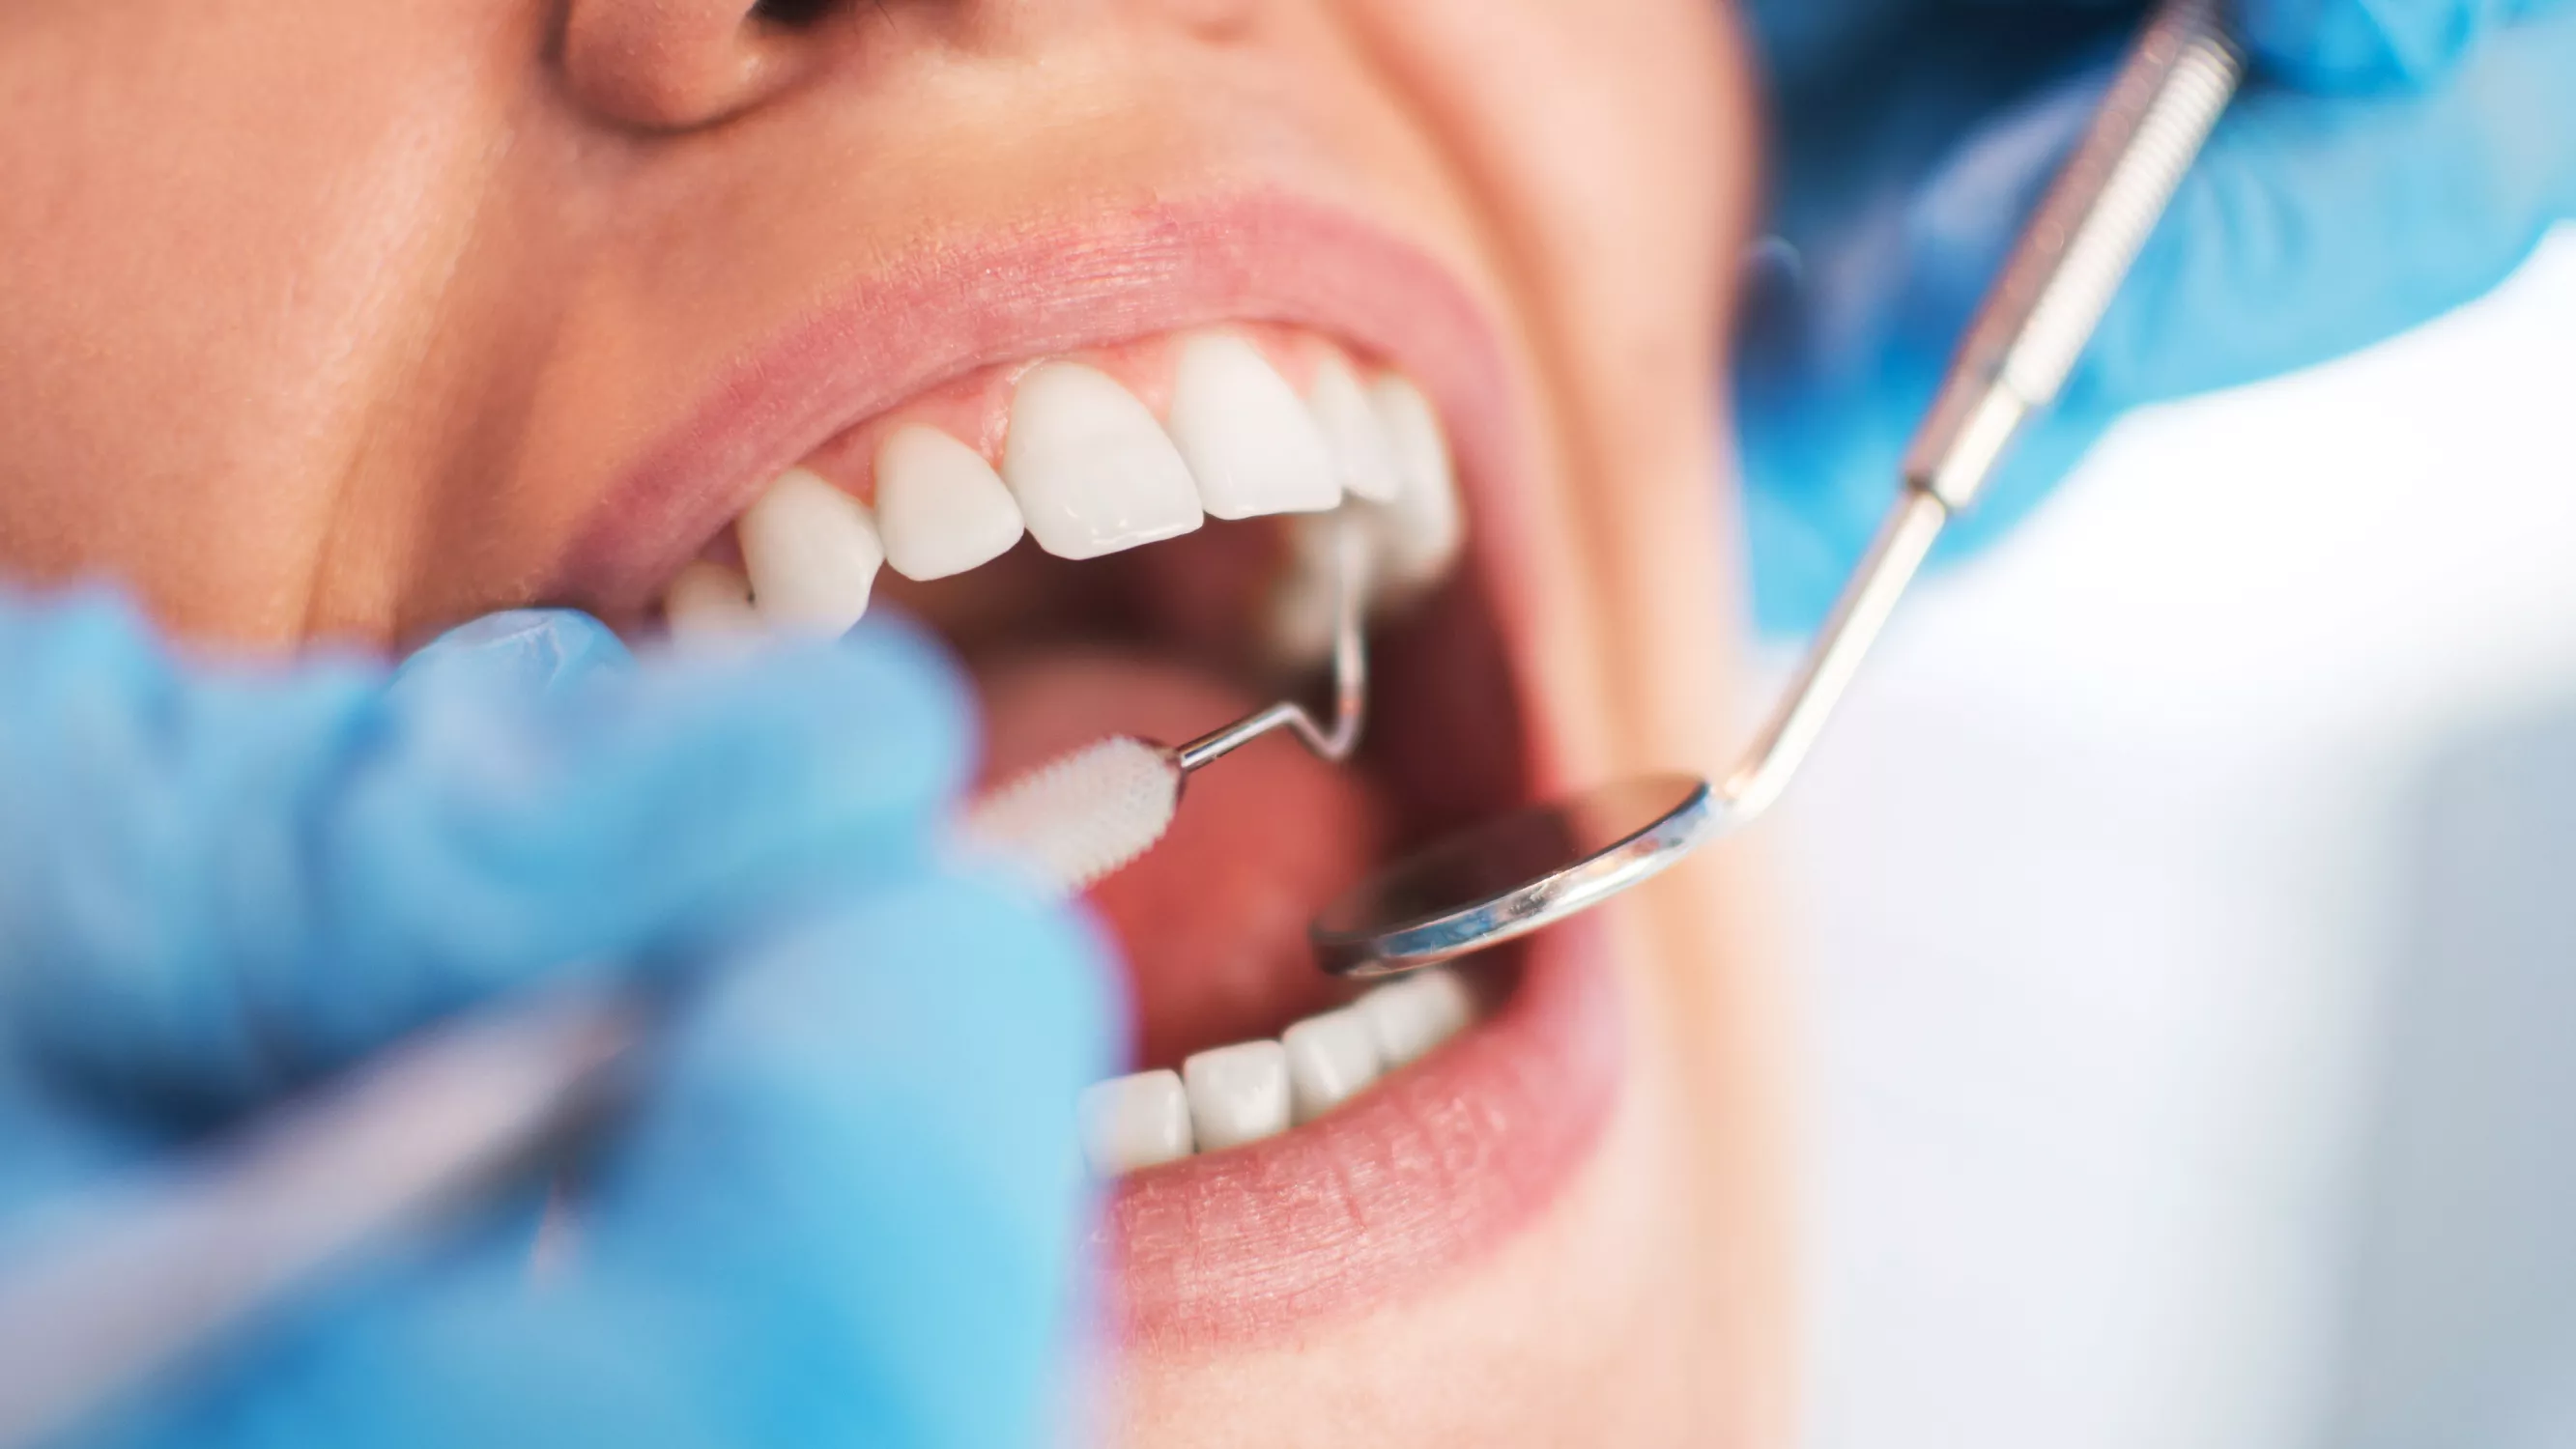 Poskiontelotulehdus voi alkaa hampaiden juurien tulehduksesta.